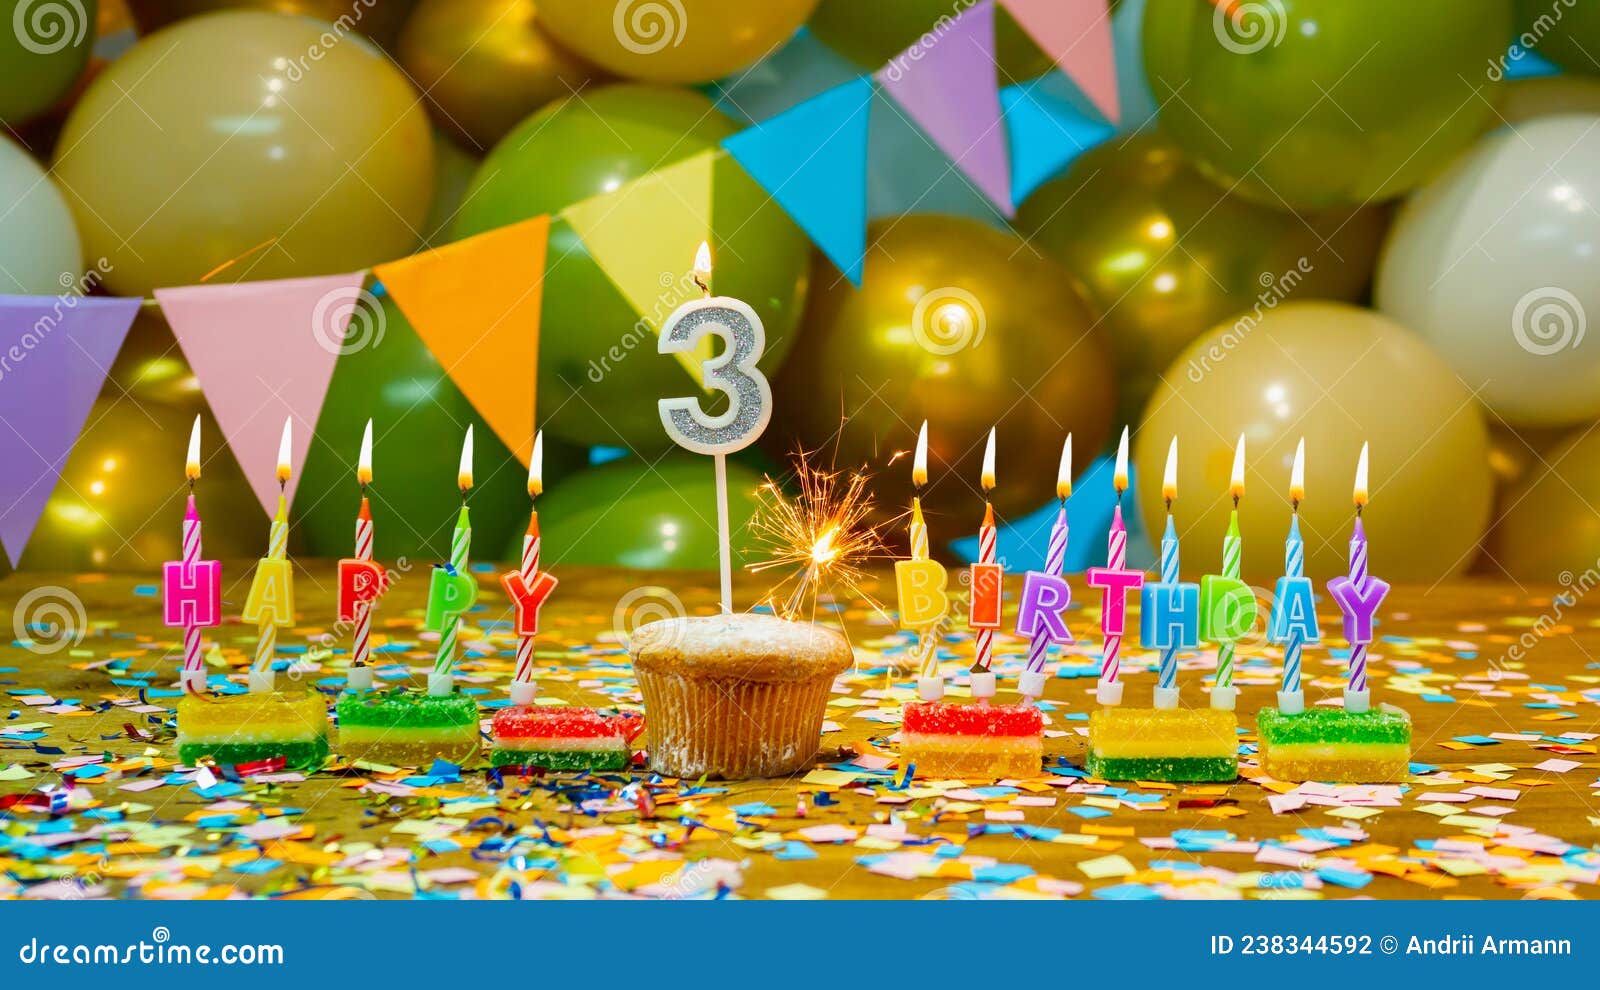 https://thumbs.dreamstime.com/z/cupcake-avec-une-bougie-trois-ans-saluant-carte-color%C3%A9e-heureux-anniversaire-%C3%A0-l-enfant-de-bougies-et-d%C3%A9corations-d-en-arri%C3%A8re-238344592.jpg